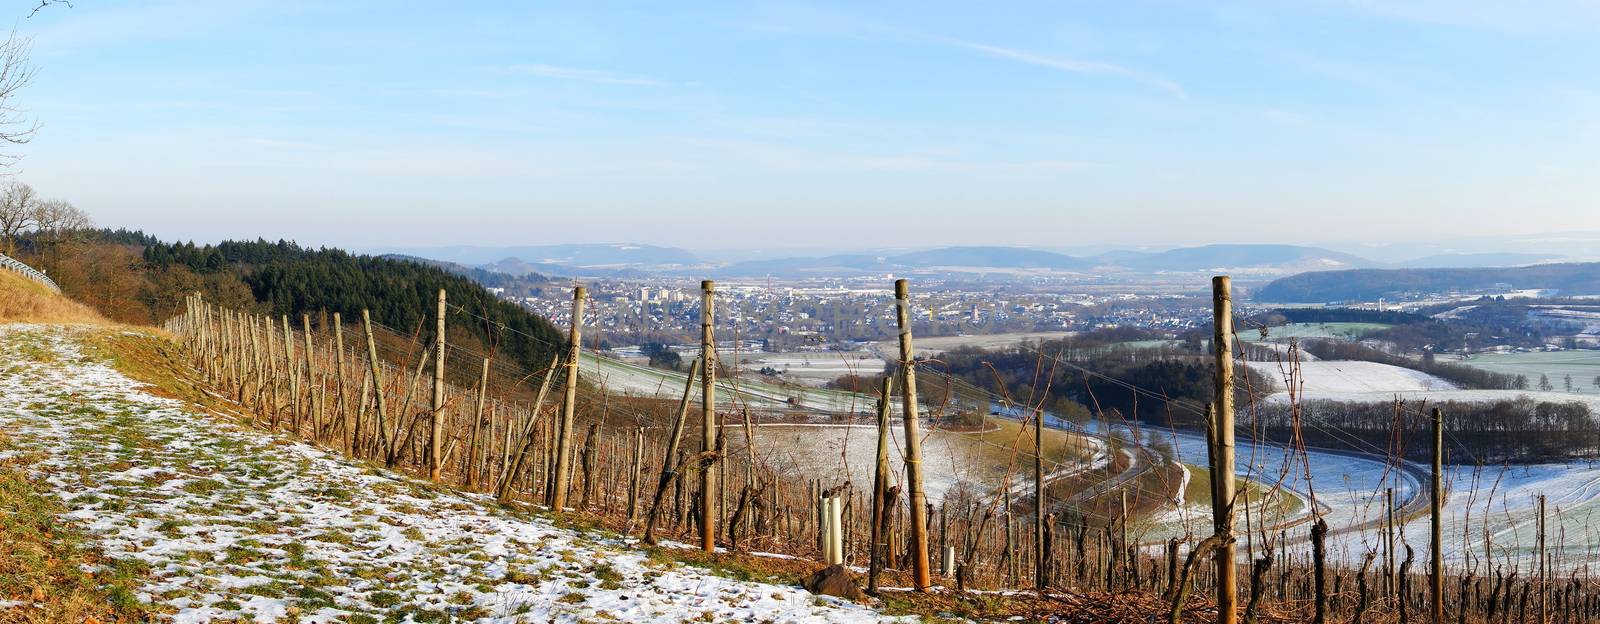 Wittlicher Senke Panorama im Winter
